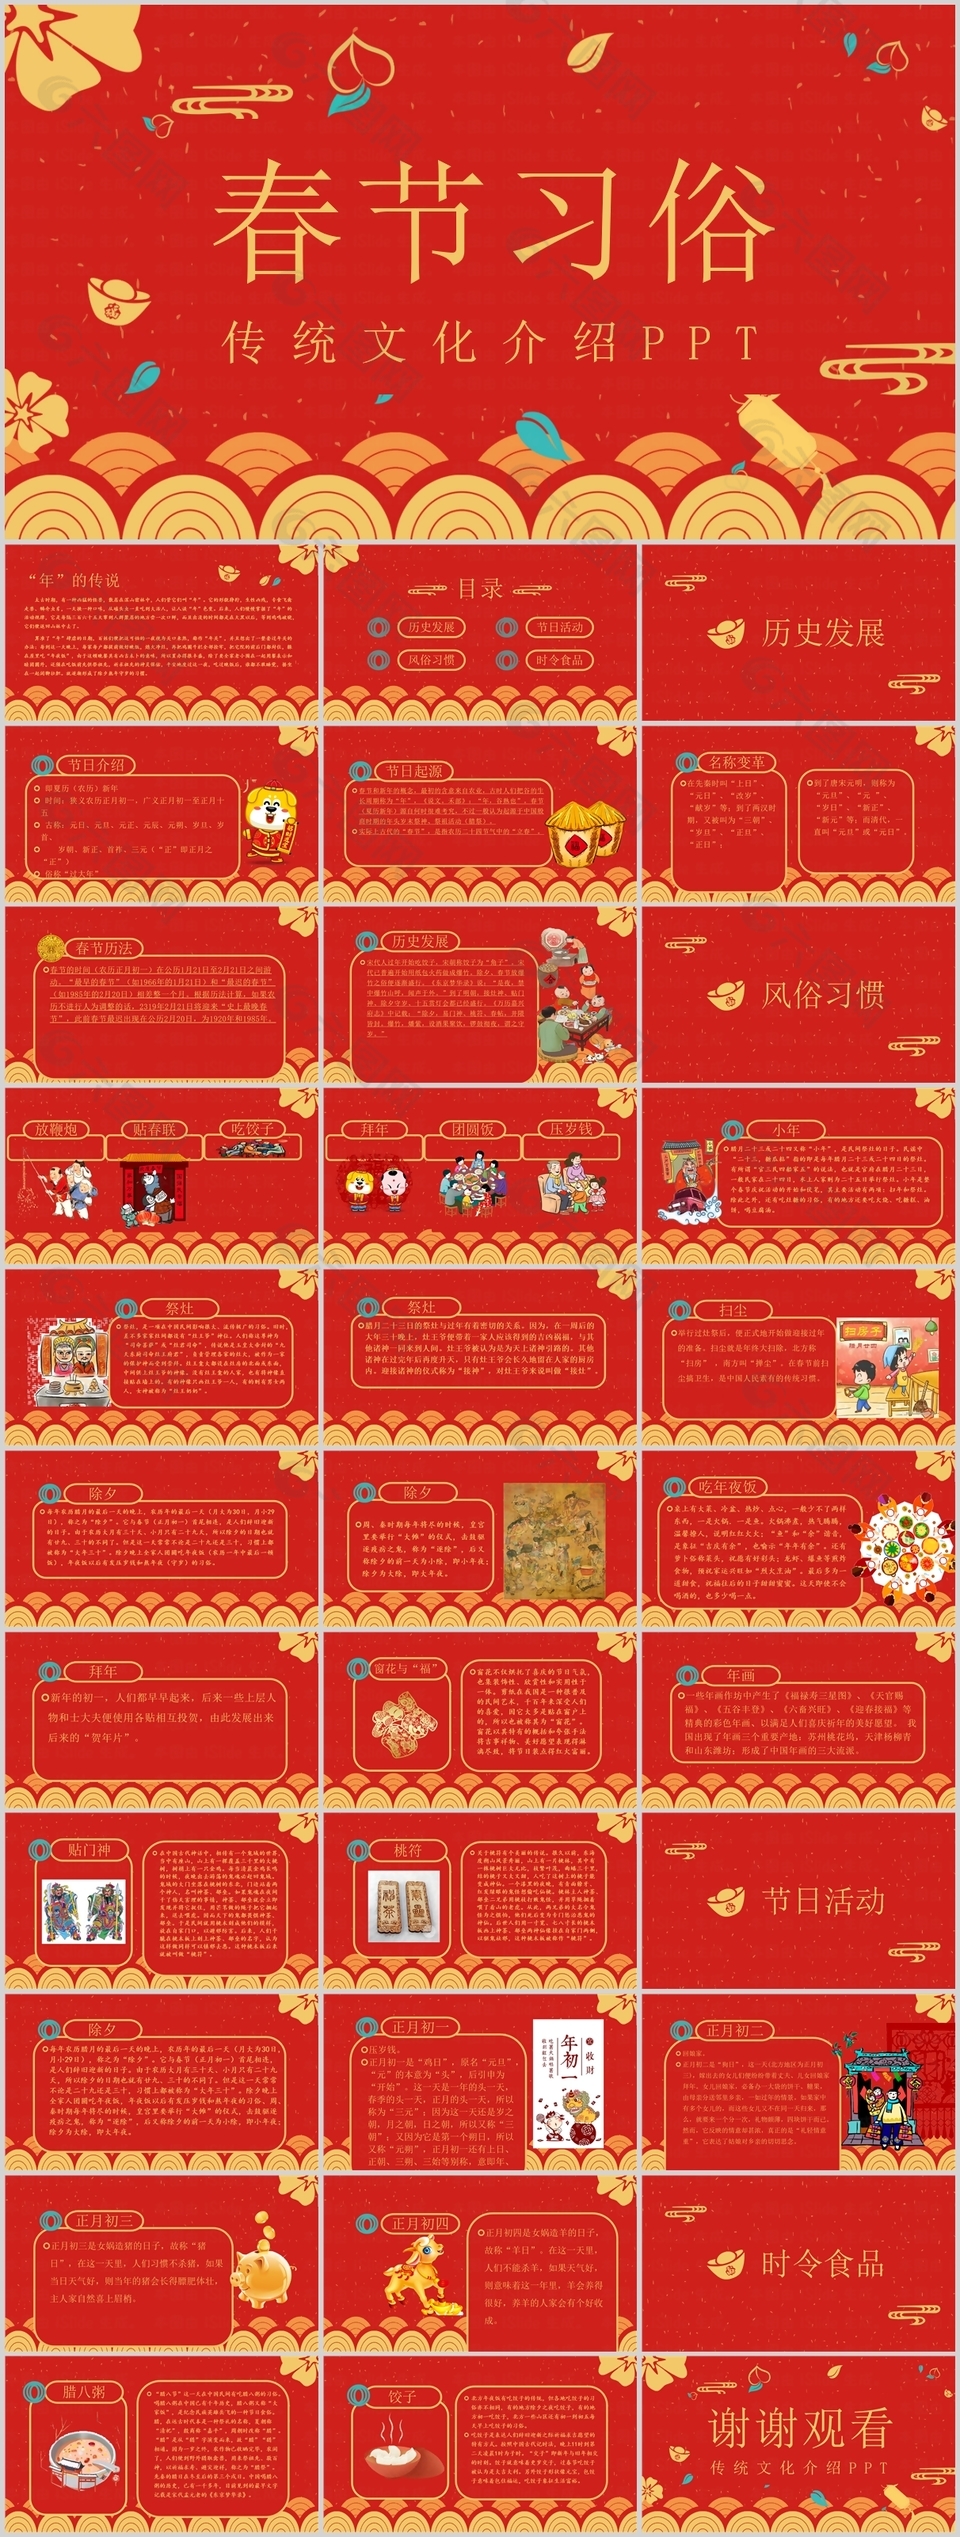 简约传统文化春节习俗介绍PPT模板